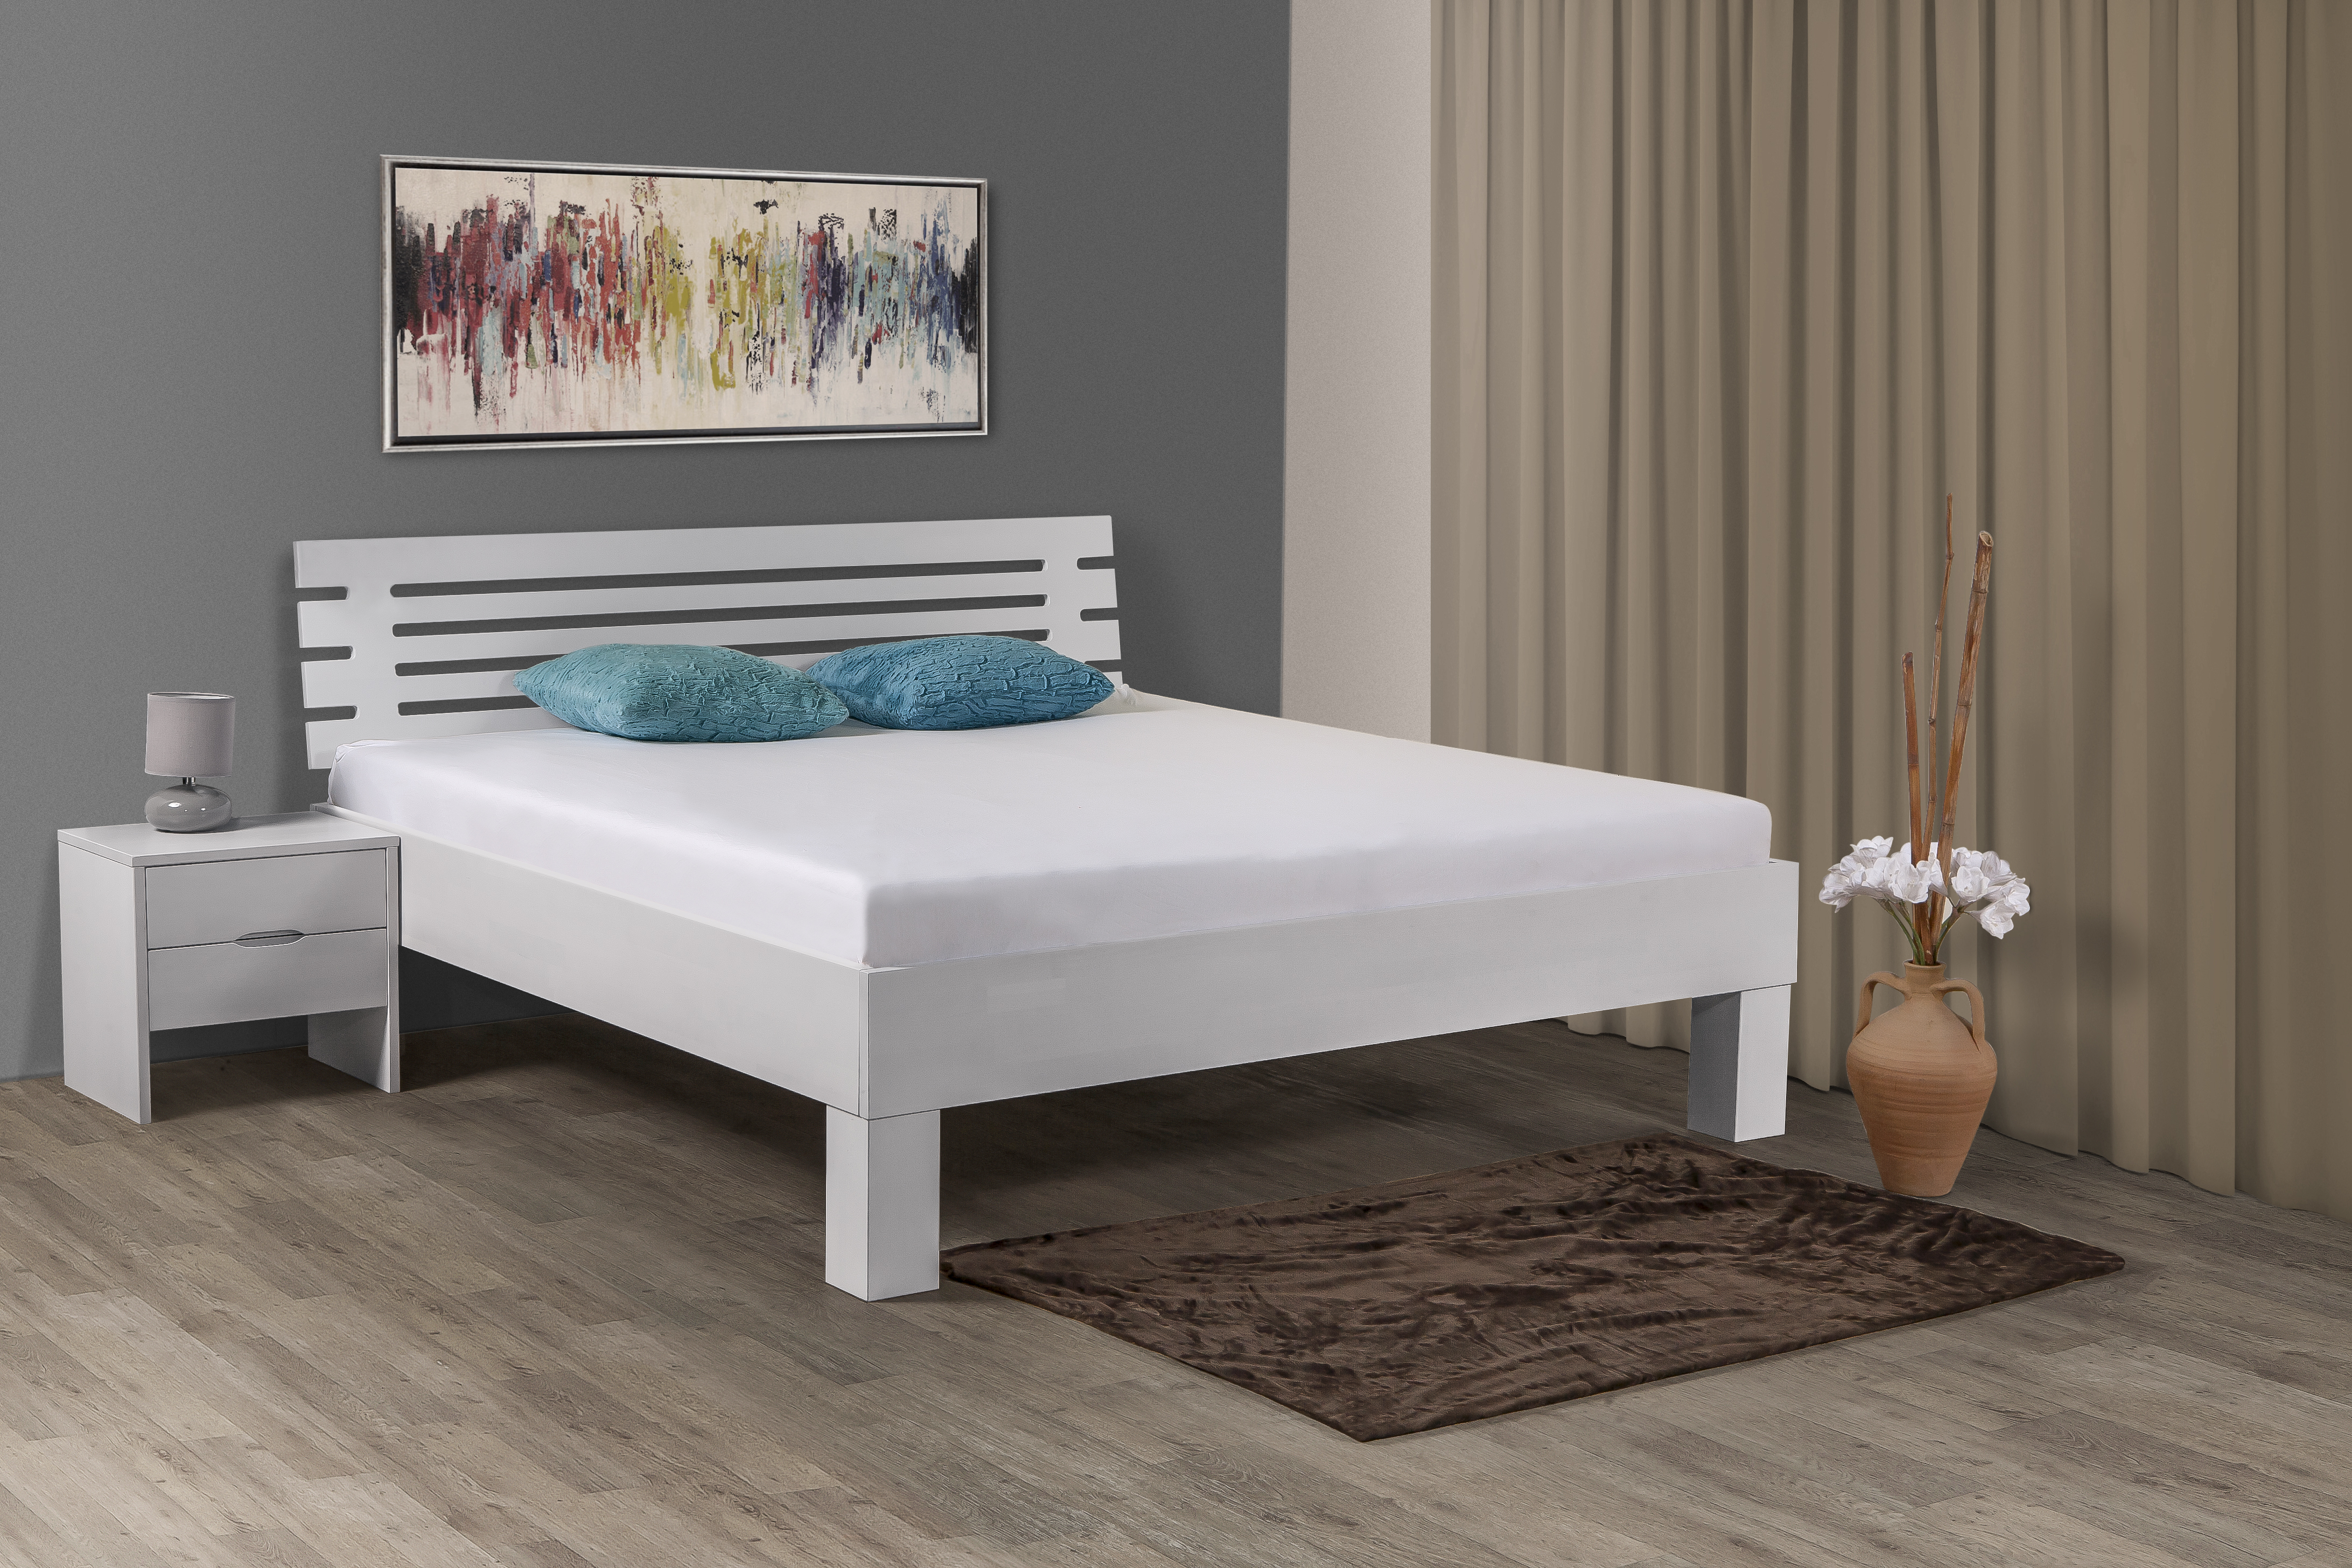 onderschrift Vooruitgaan verdieping Houten bed? Massief houten bed, ledikant voor uw slaapkamer.